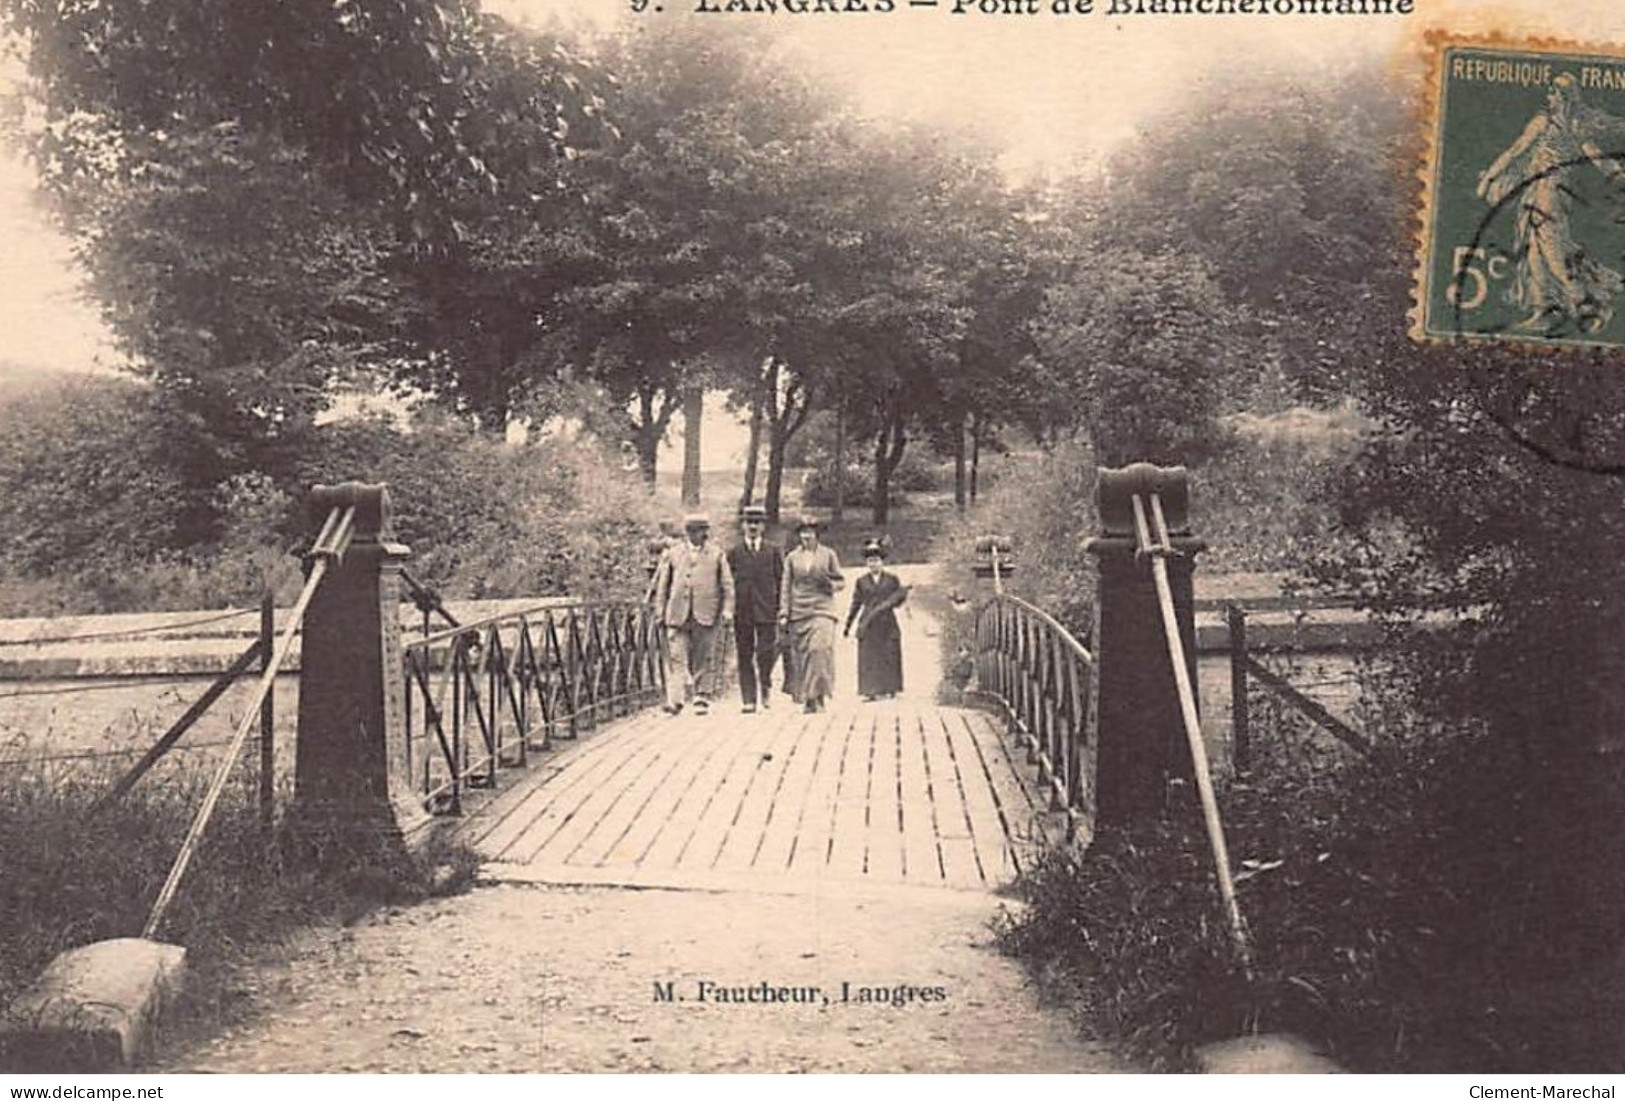 LANGRES : Pont De Blanchefontaine - Tres Bon Etat - Langres